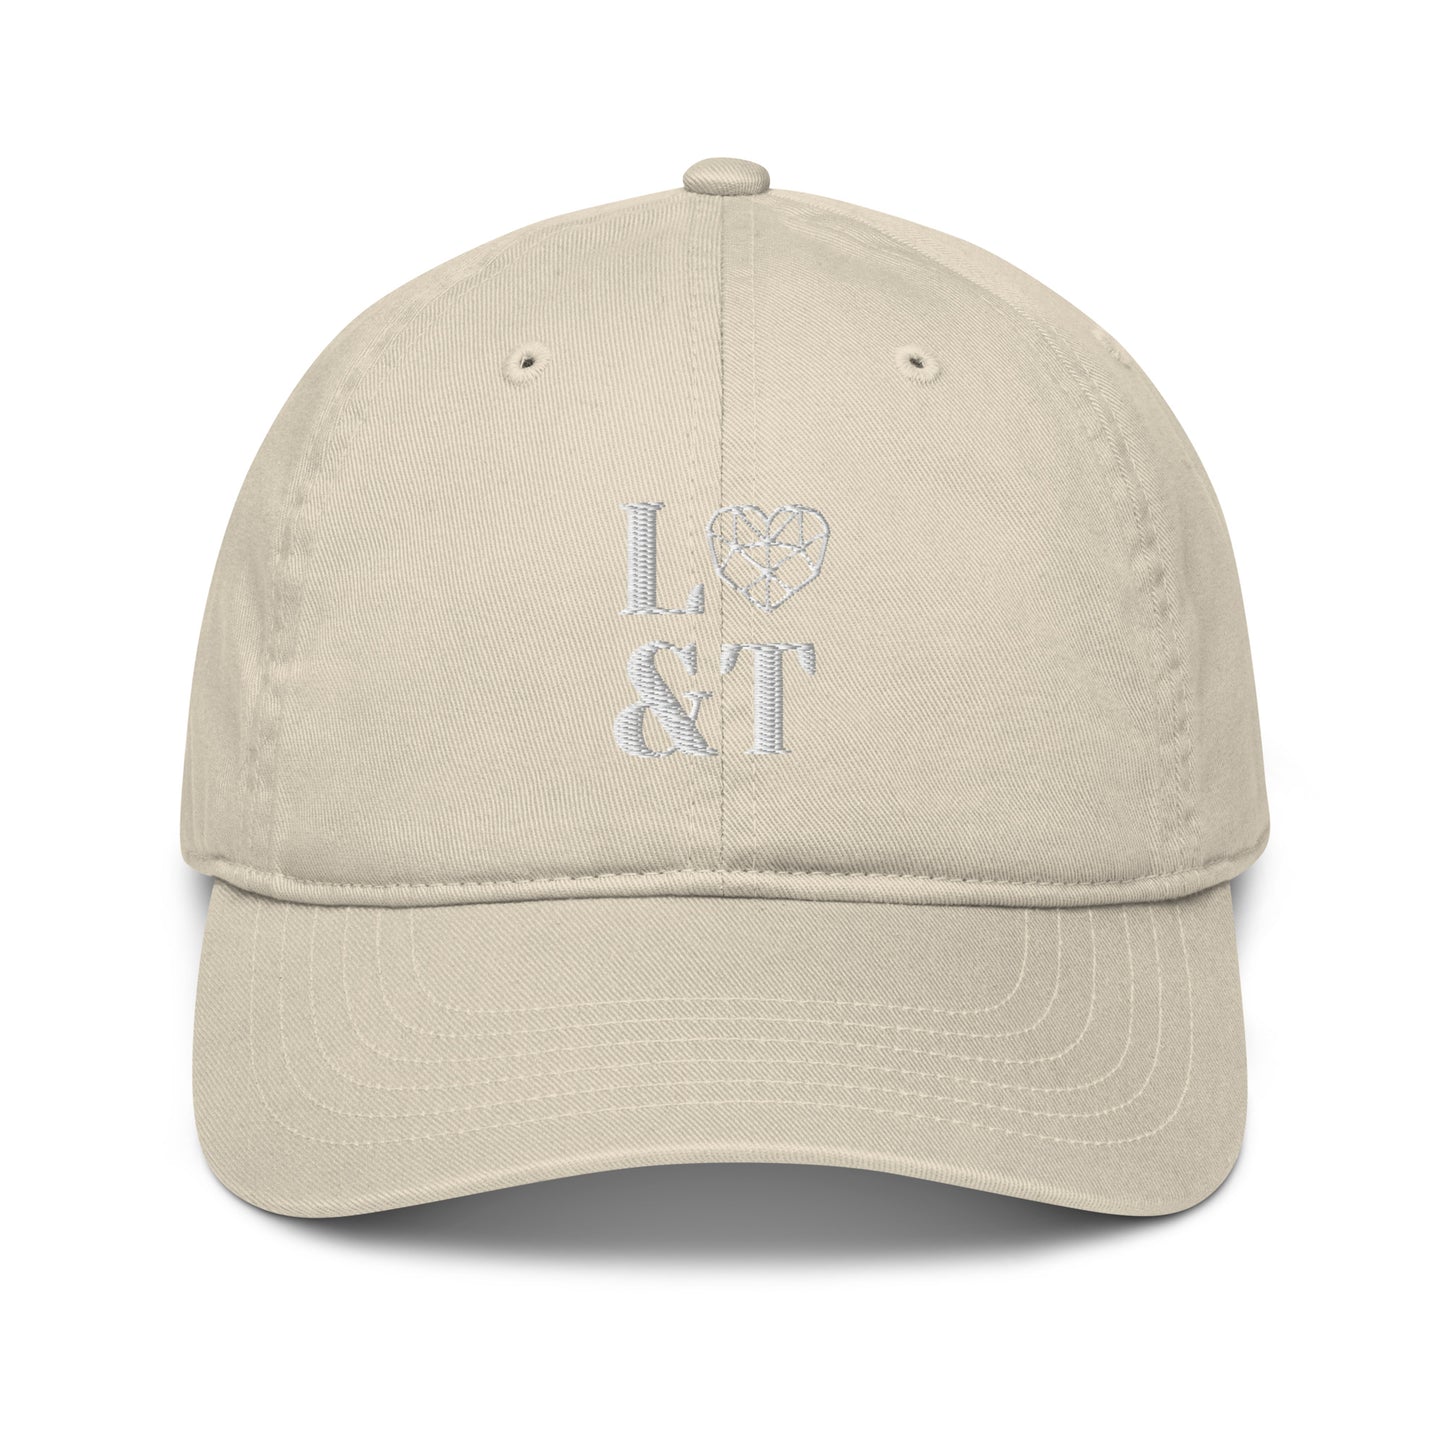 L&T Organic Dad Hat